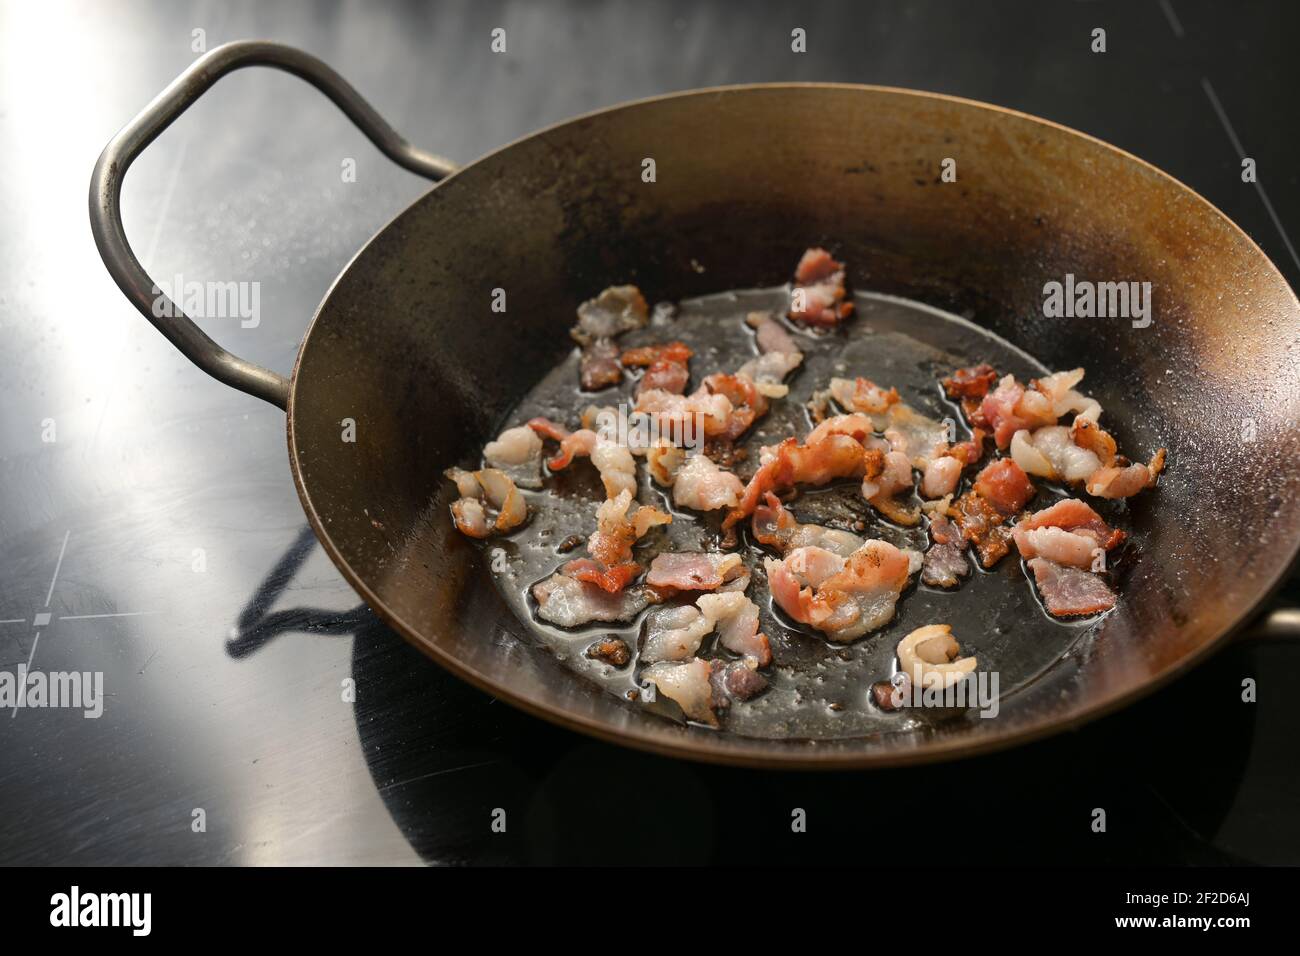 Morceaux de bacon croustillants et hachés frits dans une poêle en fer sur le poêle noir, espace de copie, mise au point sélectionnée, profondeur de champ étroite Banque D'Images